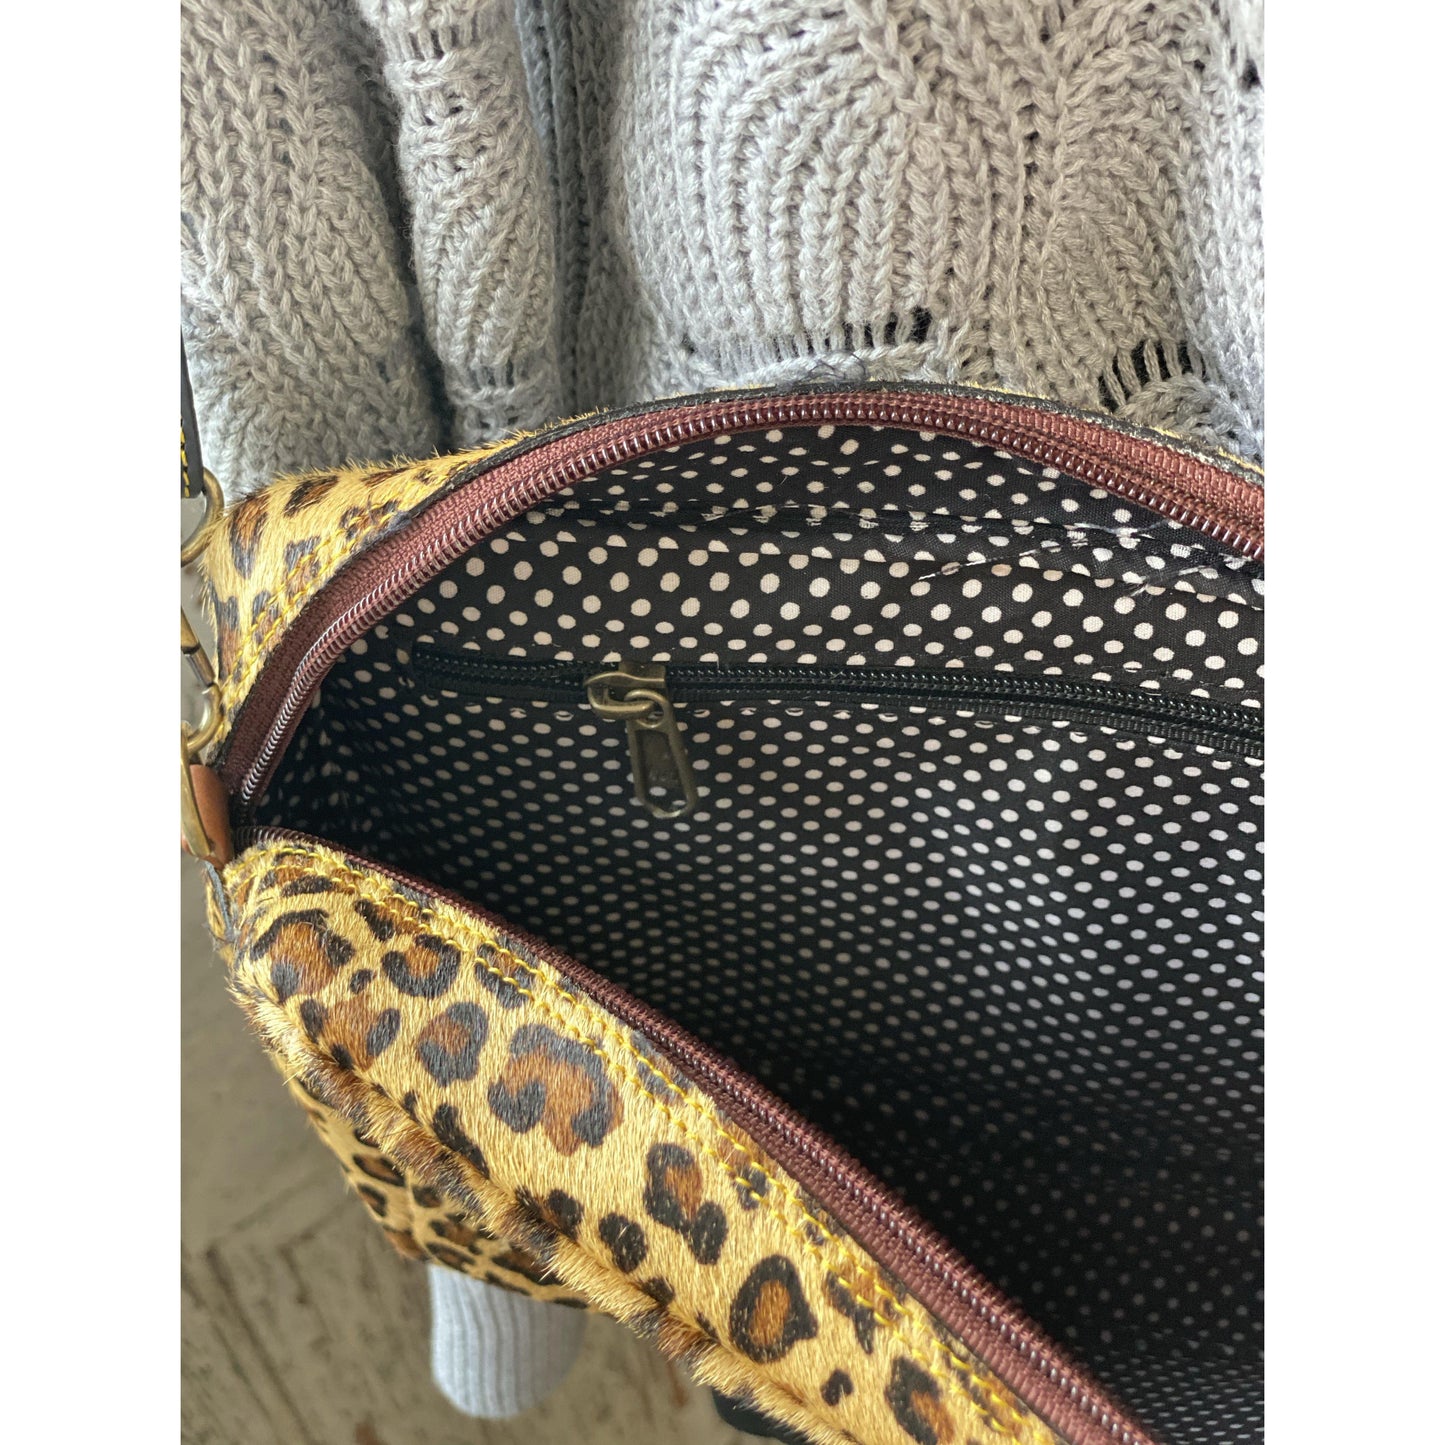 Noelle Leather Crossbody Brown Leopard